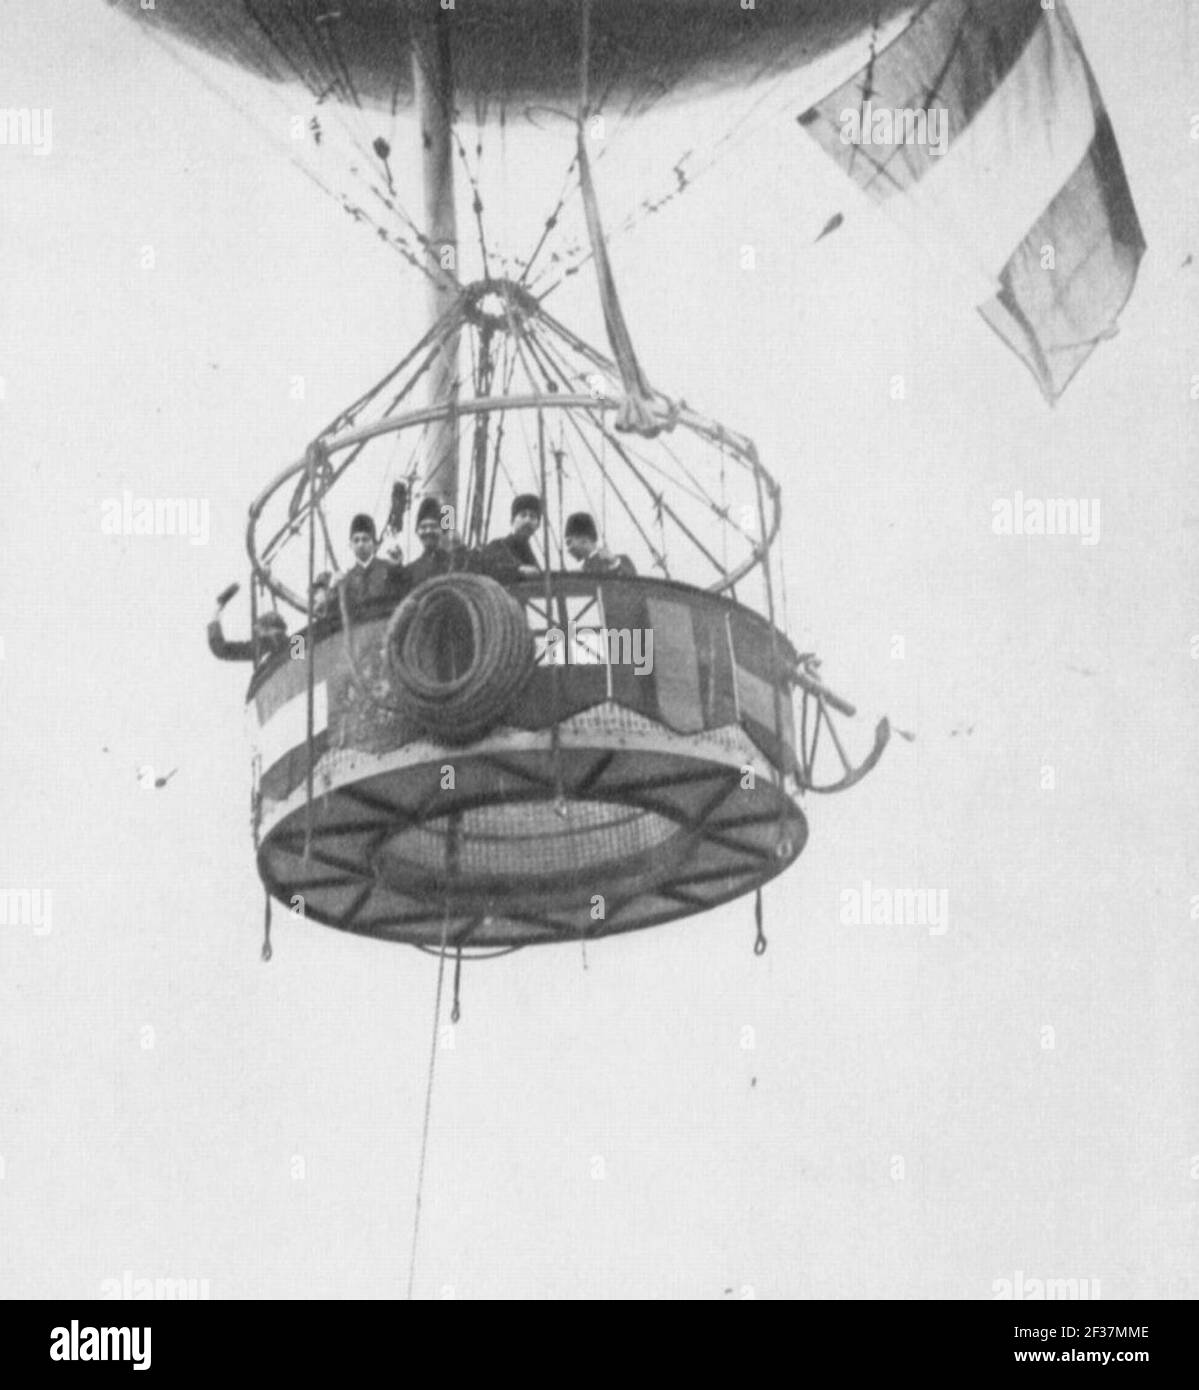 Primoli, Giuseppe - der Abflug des Fesselballons Stockfoto